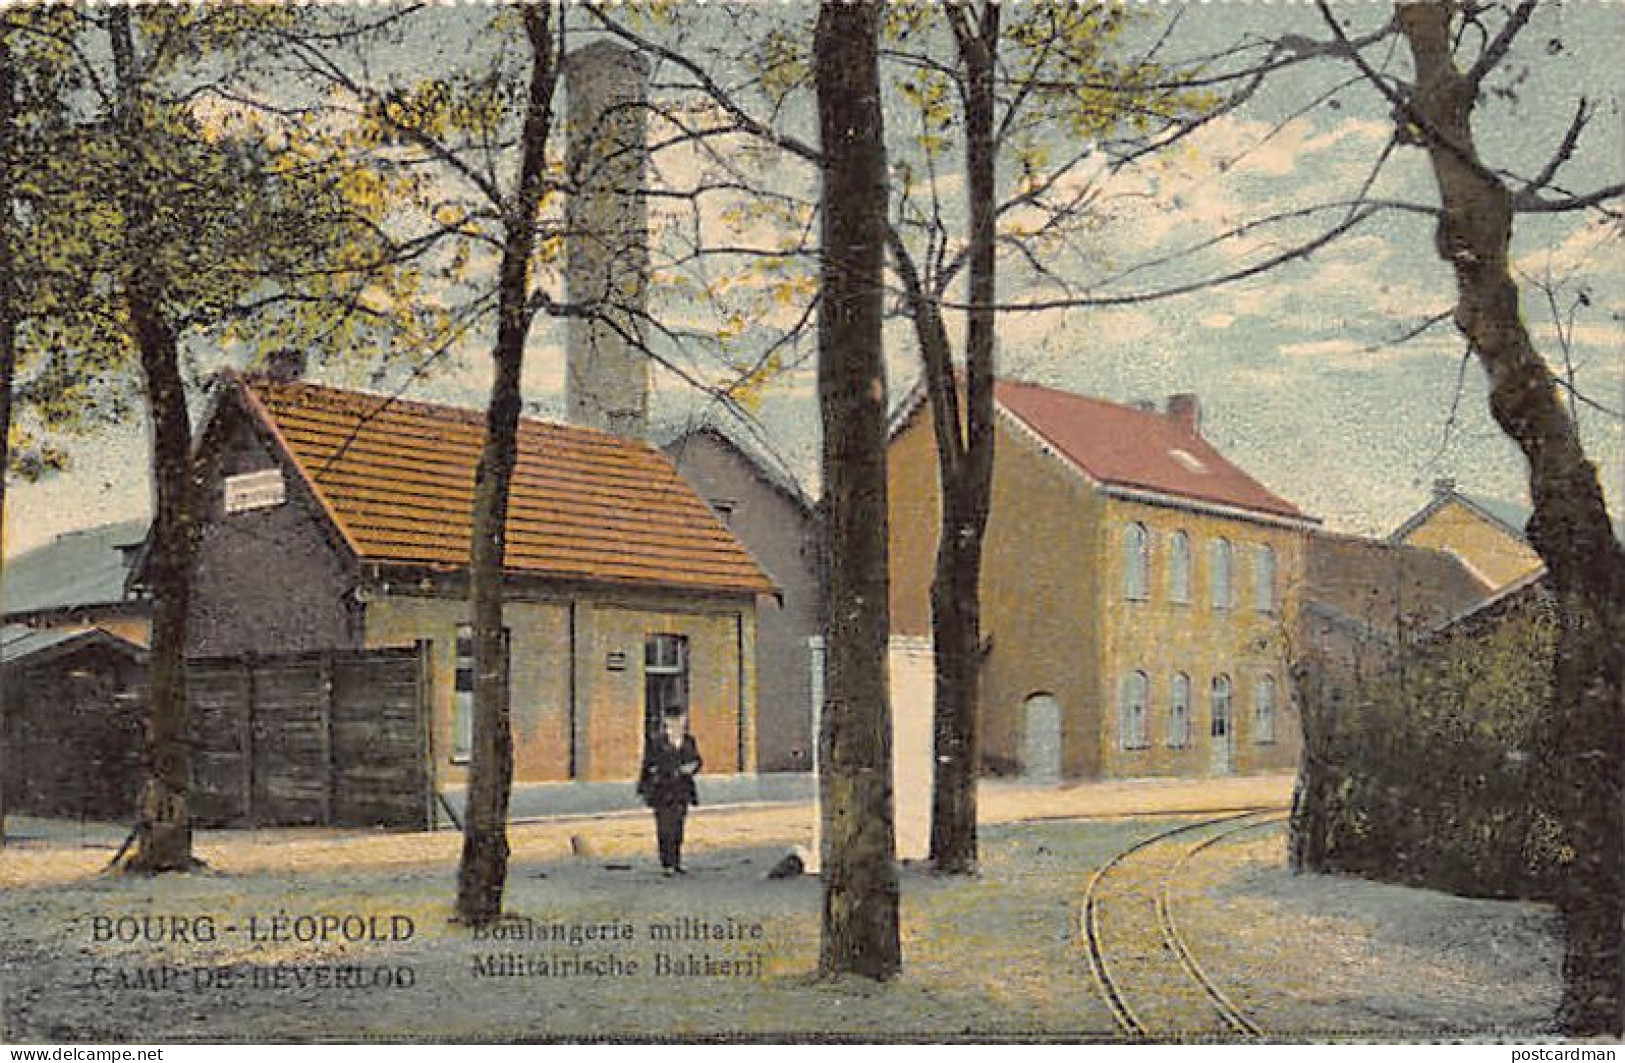 België - LEOPOLDSBURG (Camp De Beverloo) (Limb.) Militairische Bakkerij - Boulangerie Militaire - Leopoldsburg (Beverloo Camp)